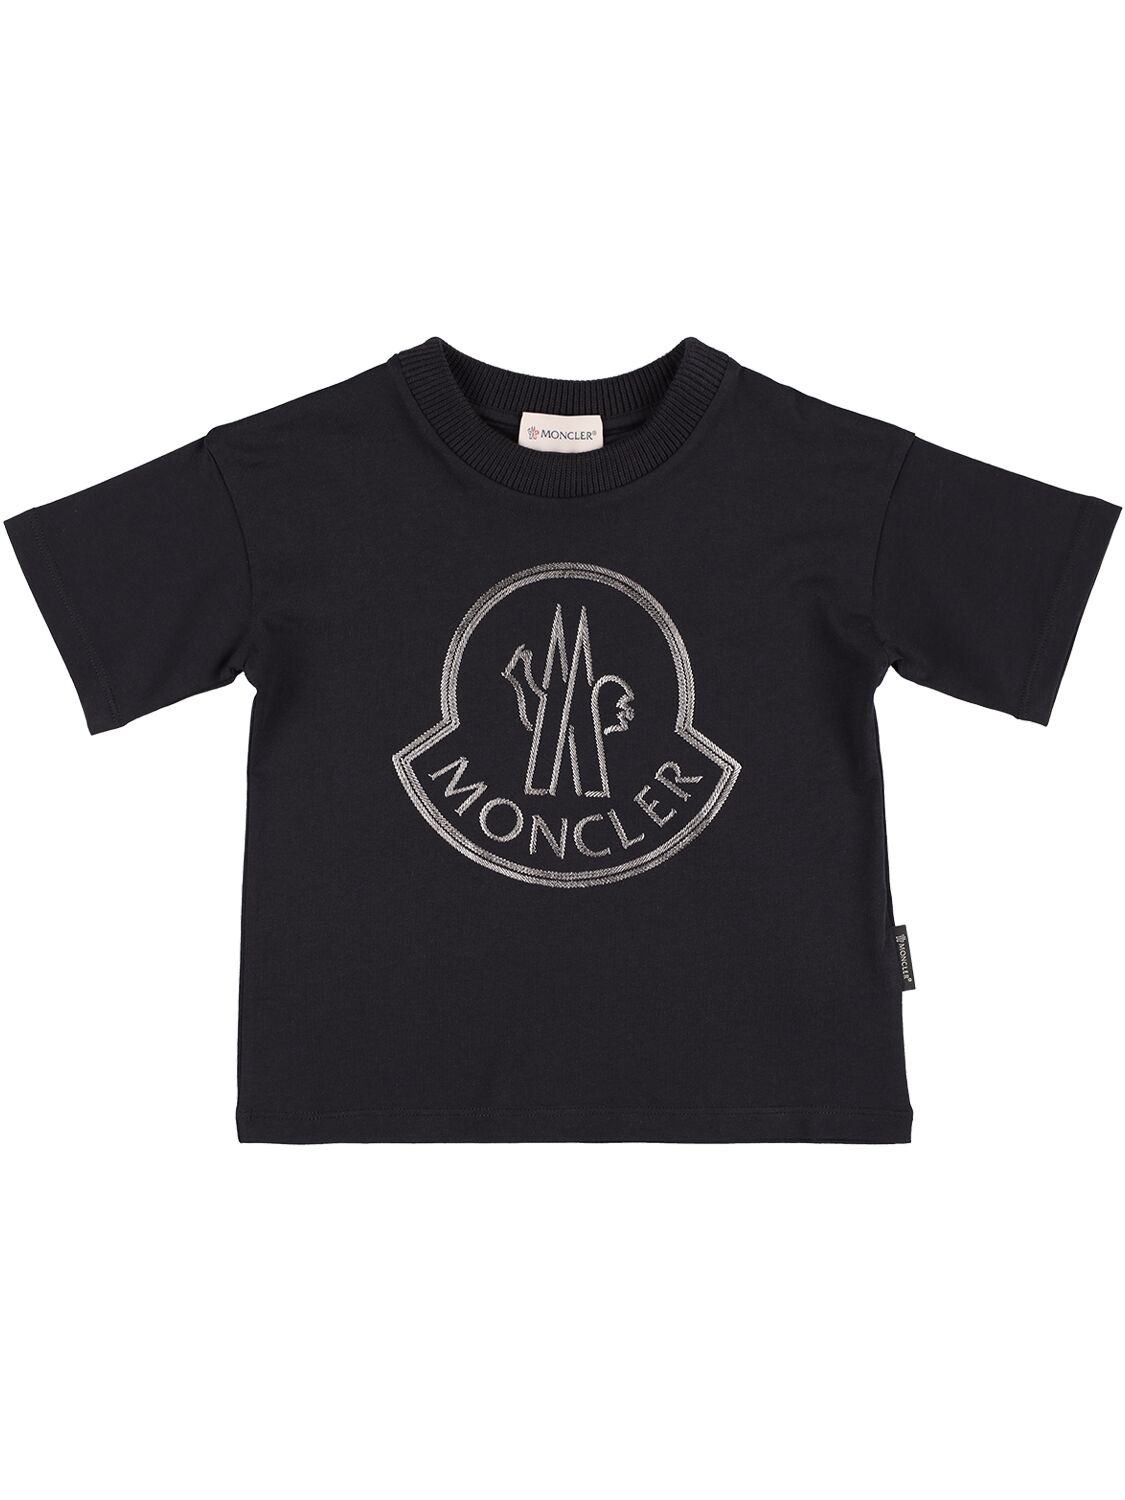 Moncler Kids' Printed Logo Cotton Jersey T-shirt In Black